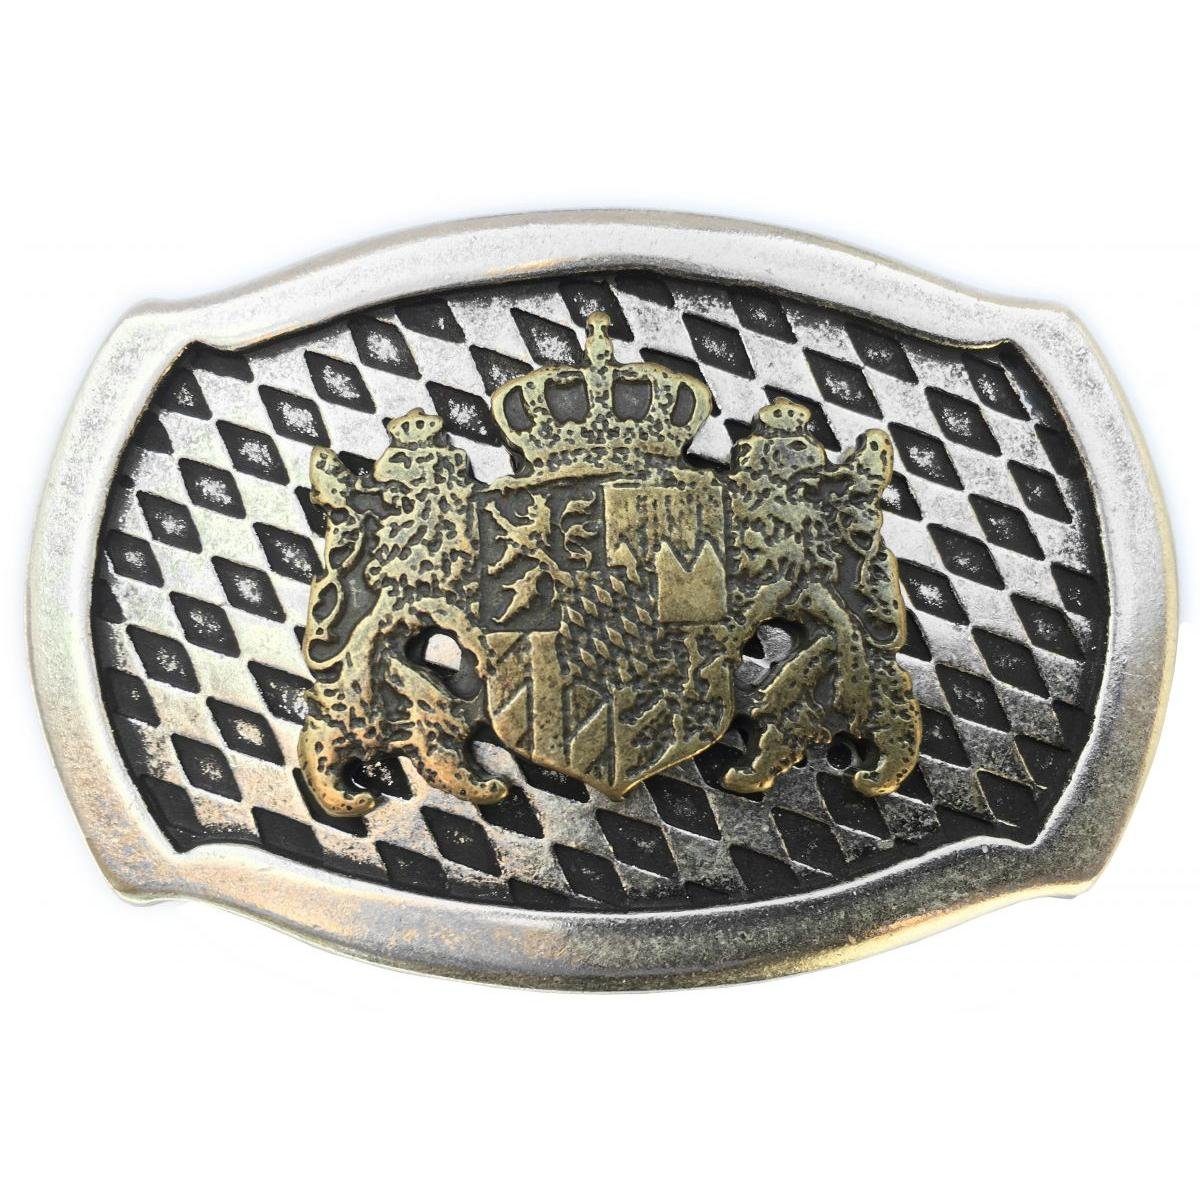 mit bicolor s/g Löwen Für Wechselschließe - BELTINGER - Buckle Gürtelschließe 40mm Gürtelschnalle di Wappen